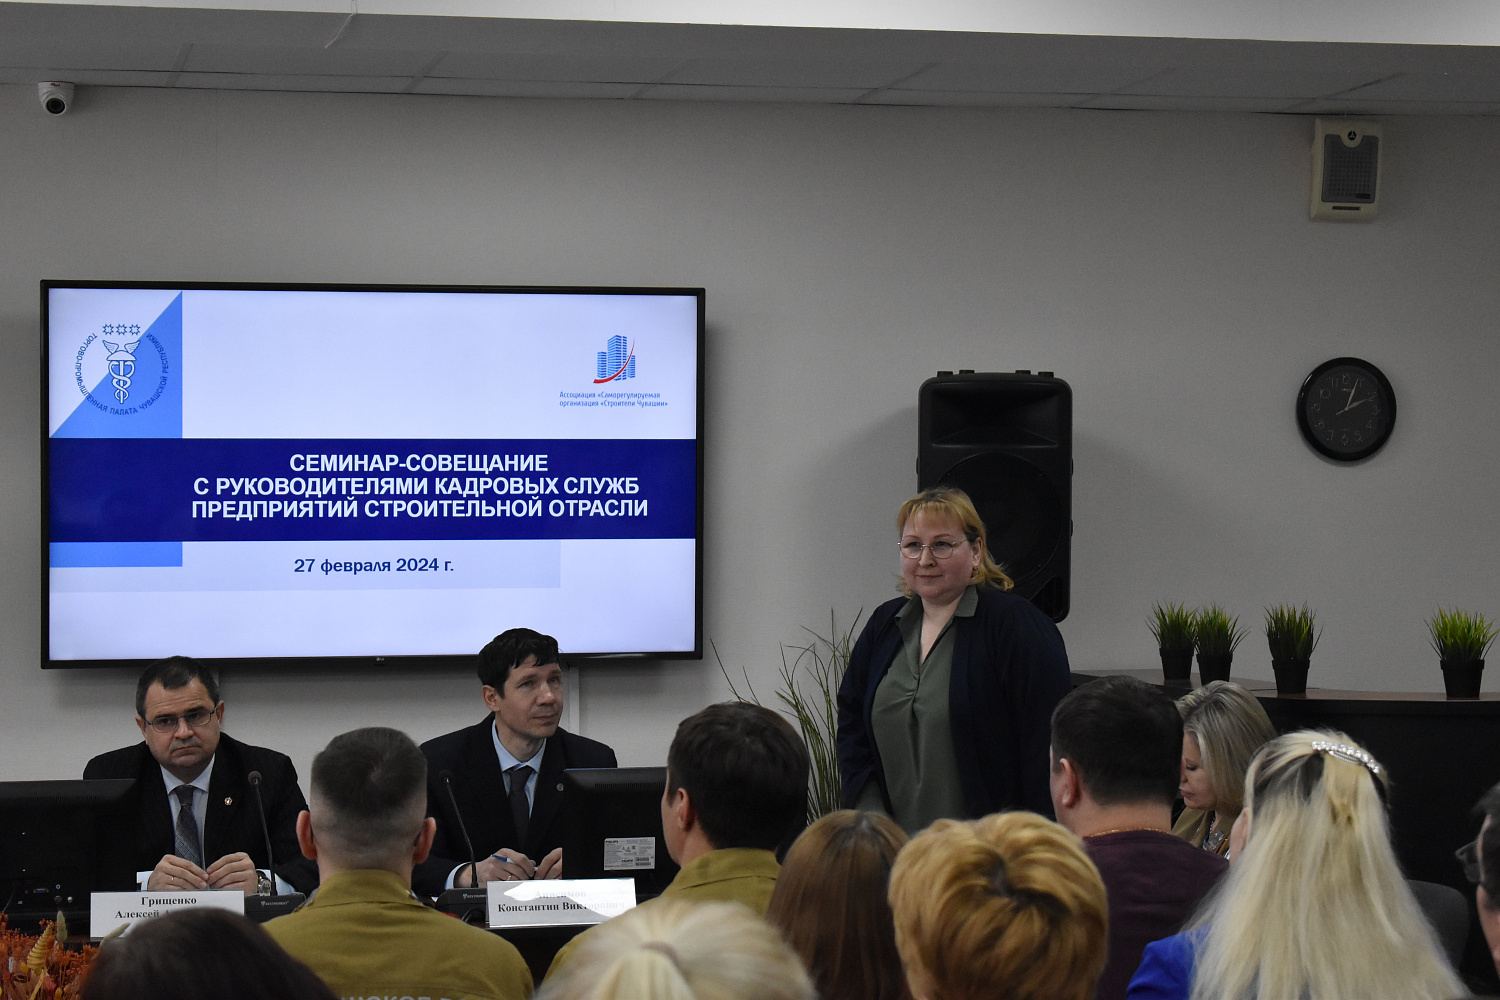 27 февраля в ТПП Чувашской Республики состоялся семинар-совещание для руководителей и специалистов кадровых служб предприятий строительной отрасли